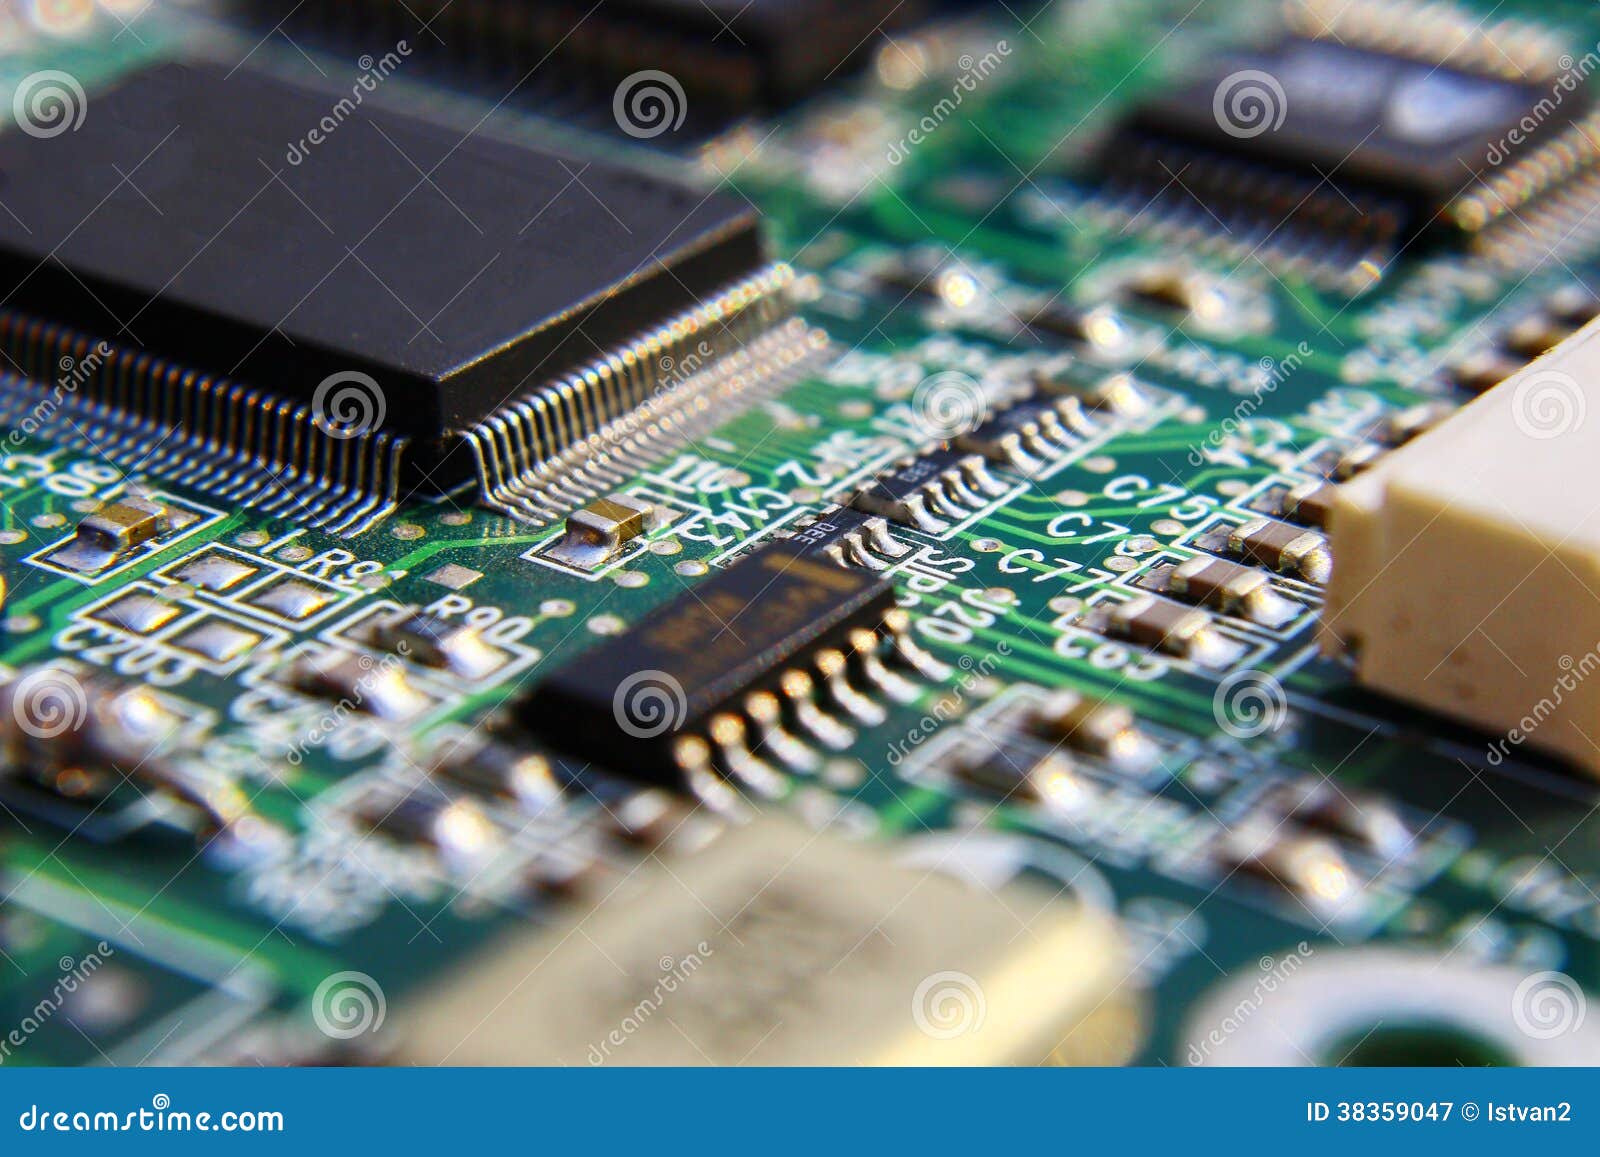 Composants De Circuit Imprime Image Stock Image Du Panneaux Diode